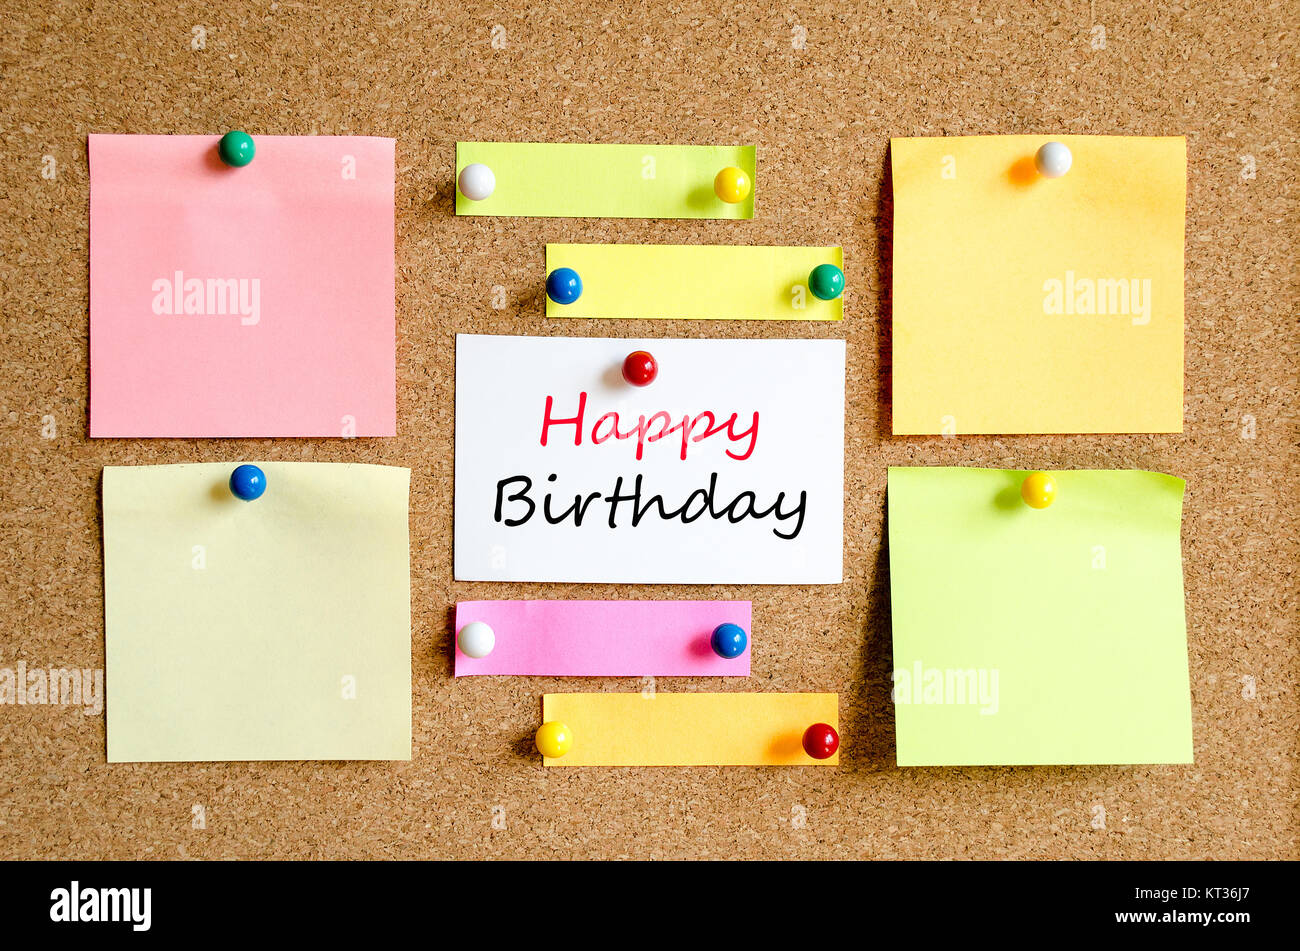 Happy birthday text concept Stock Photo